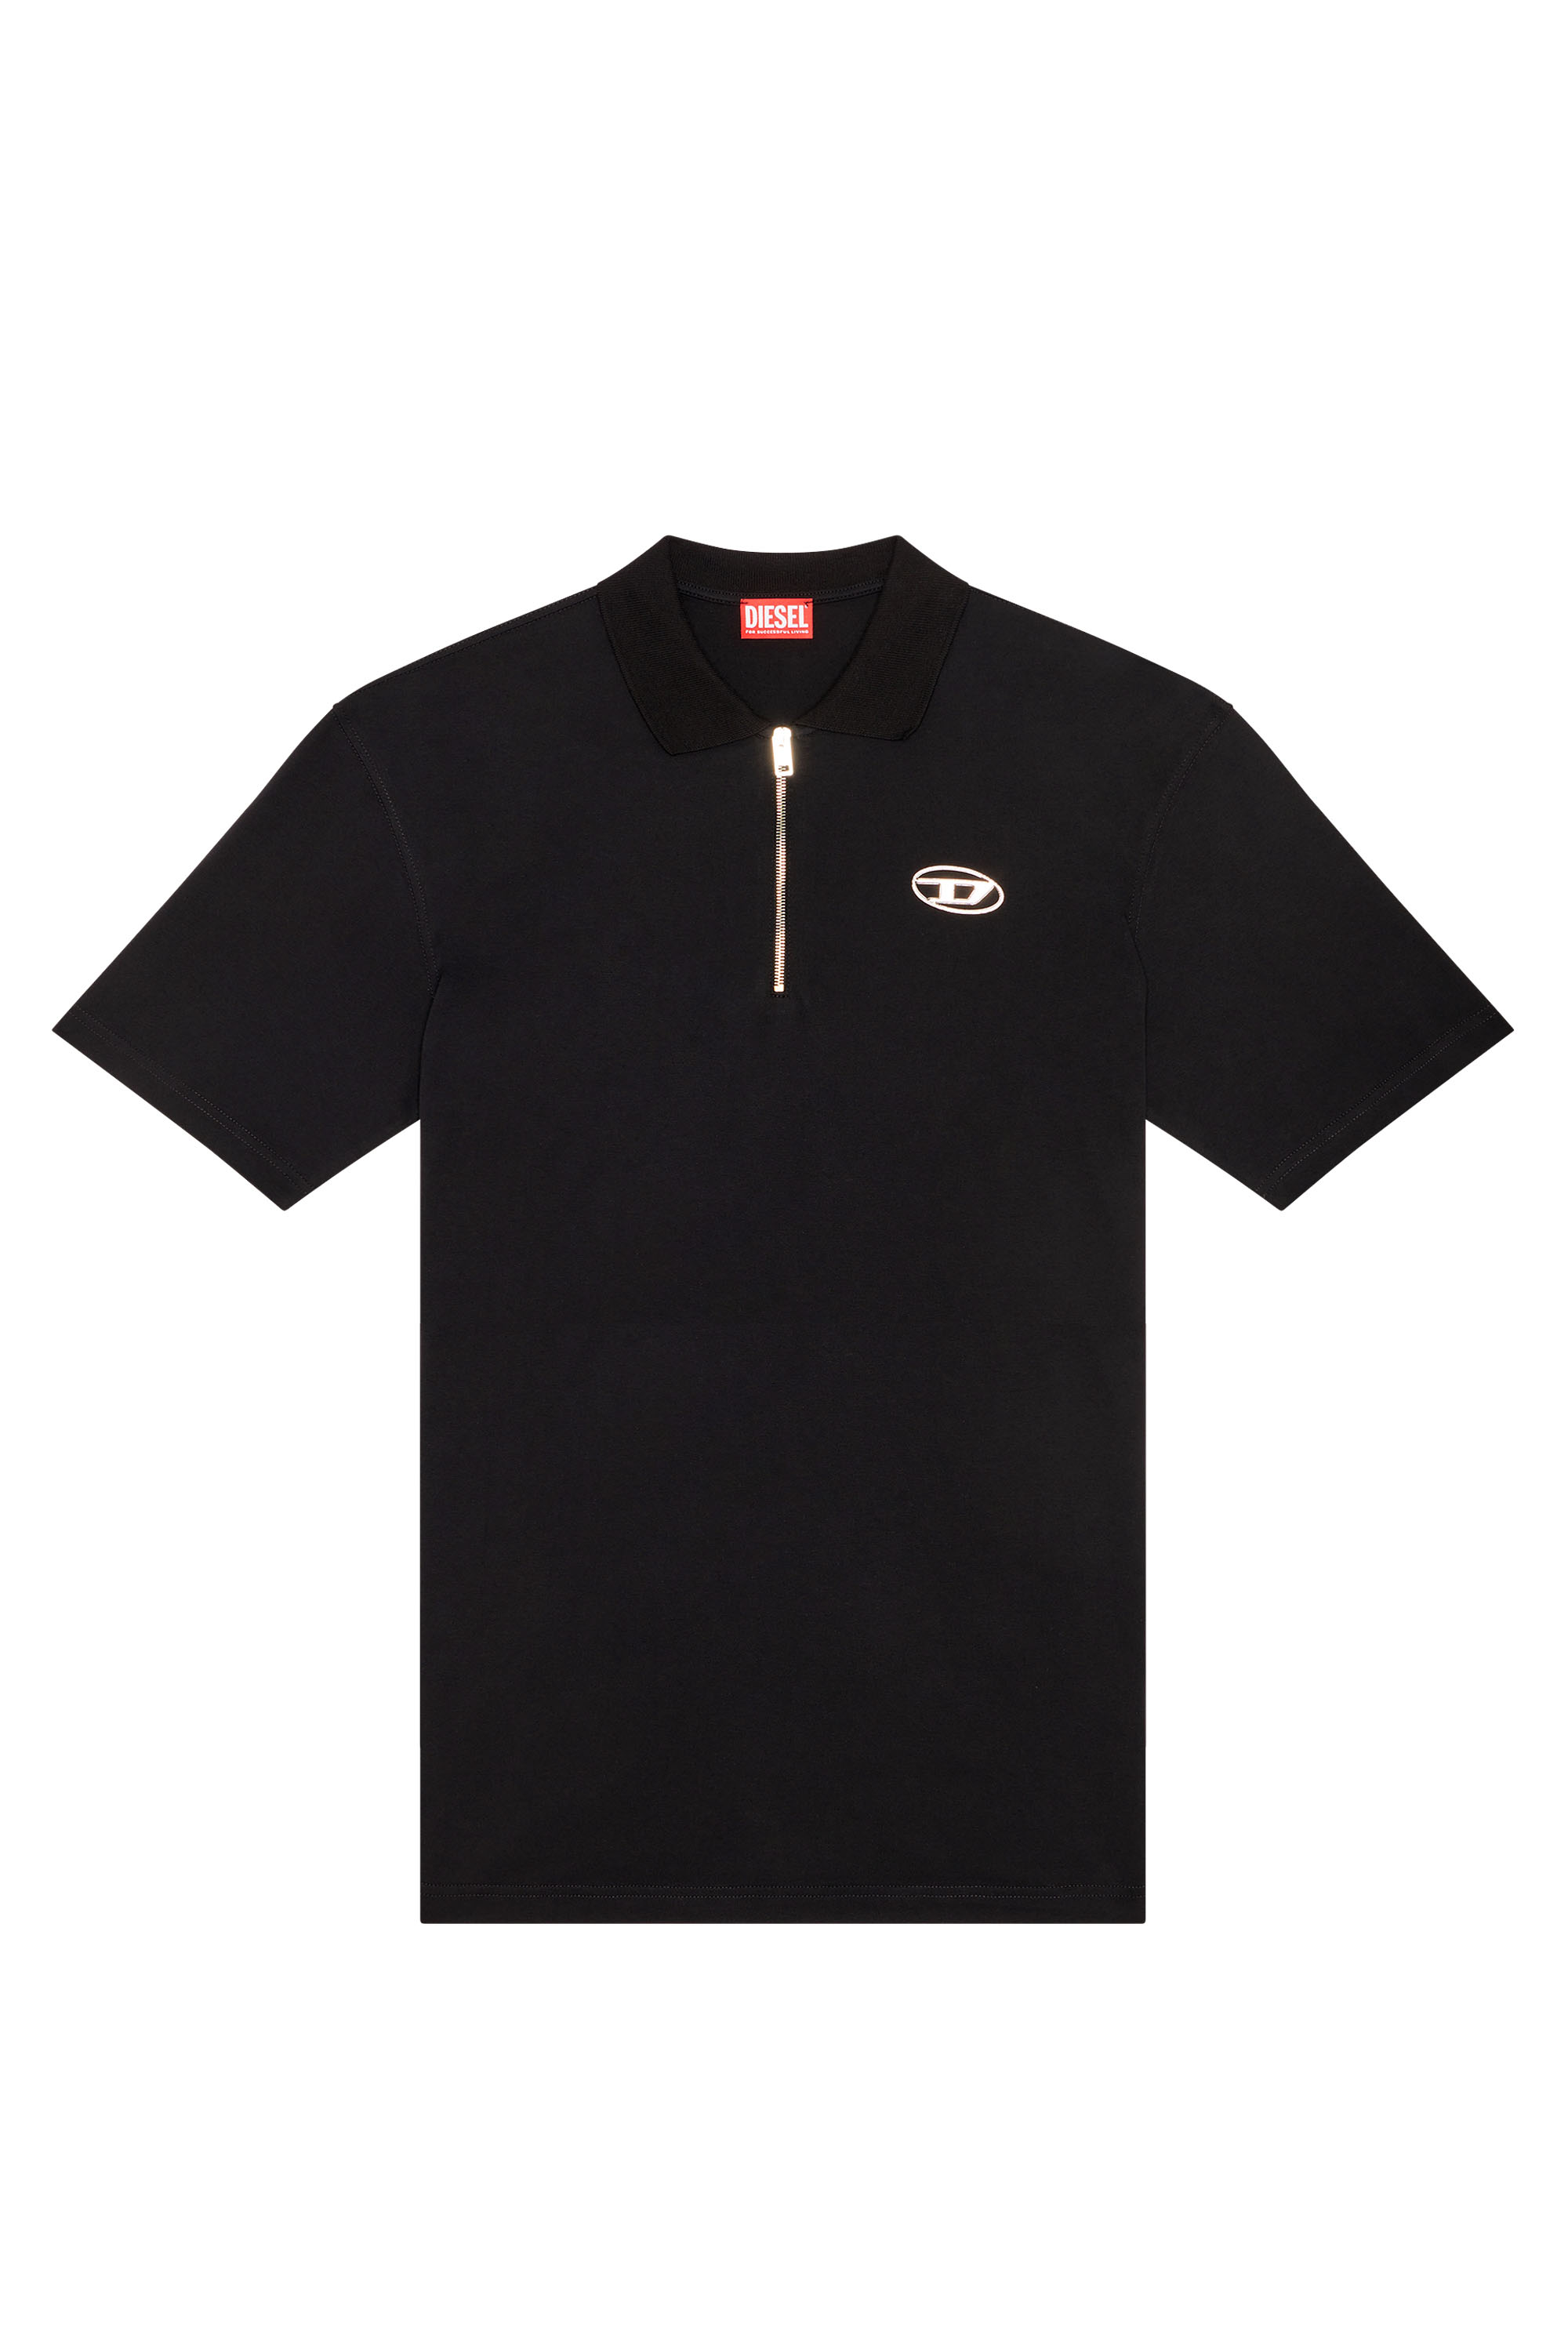 Meget sur Es Kina Men's short, long sleeve polo shirt: Cotton, Slim Fit | Diesel®